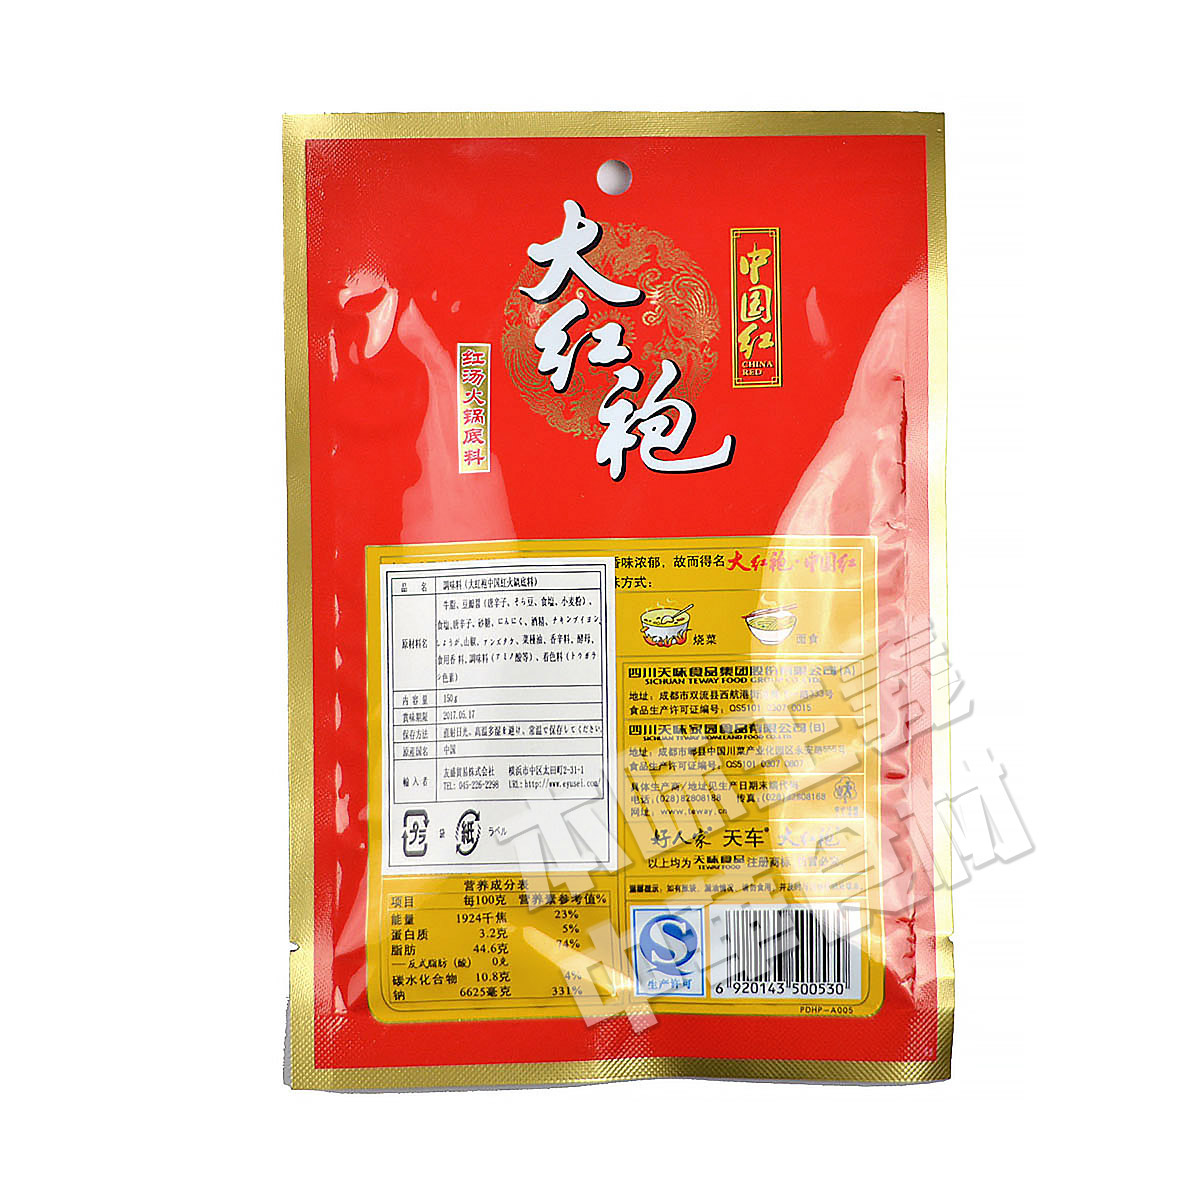 楽天市場 大紅袍中国紅紅湯火鍋底料 火鍋の素 中国名産 中華料理